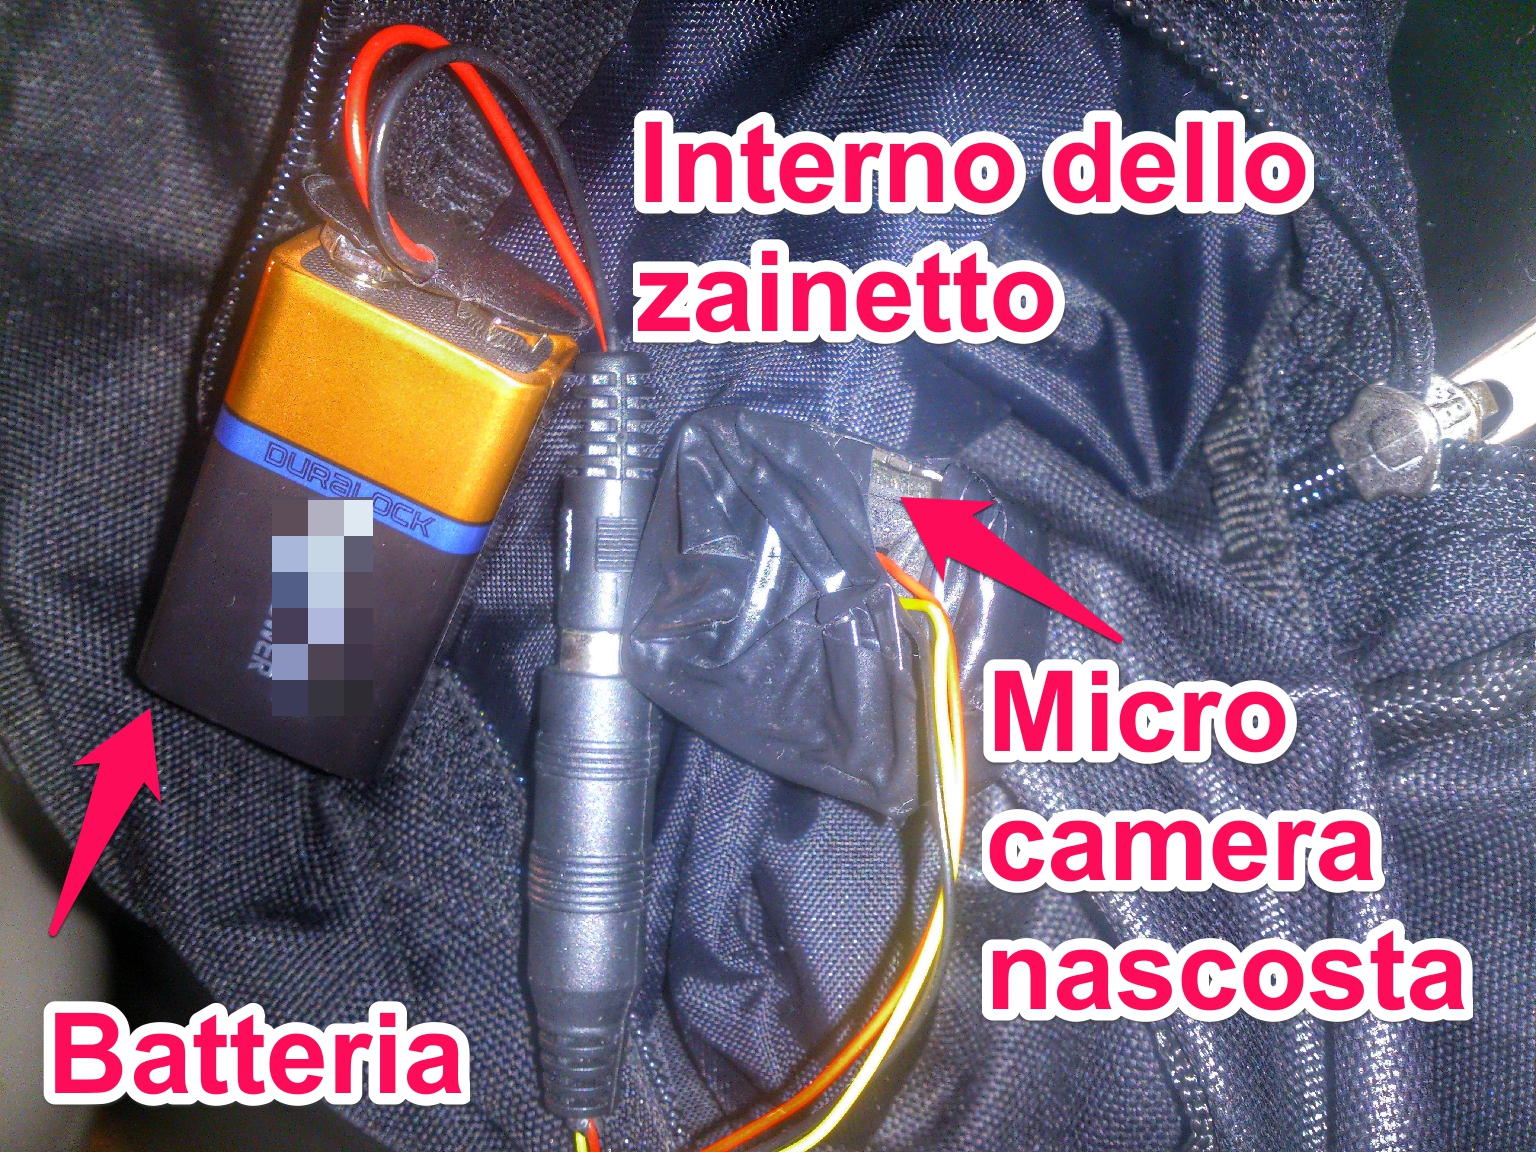 Come trovare le telecamere nascoste e microcamere